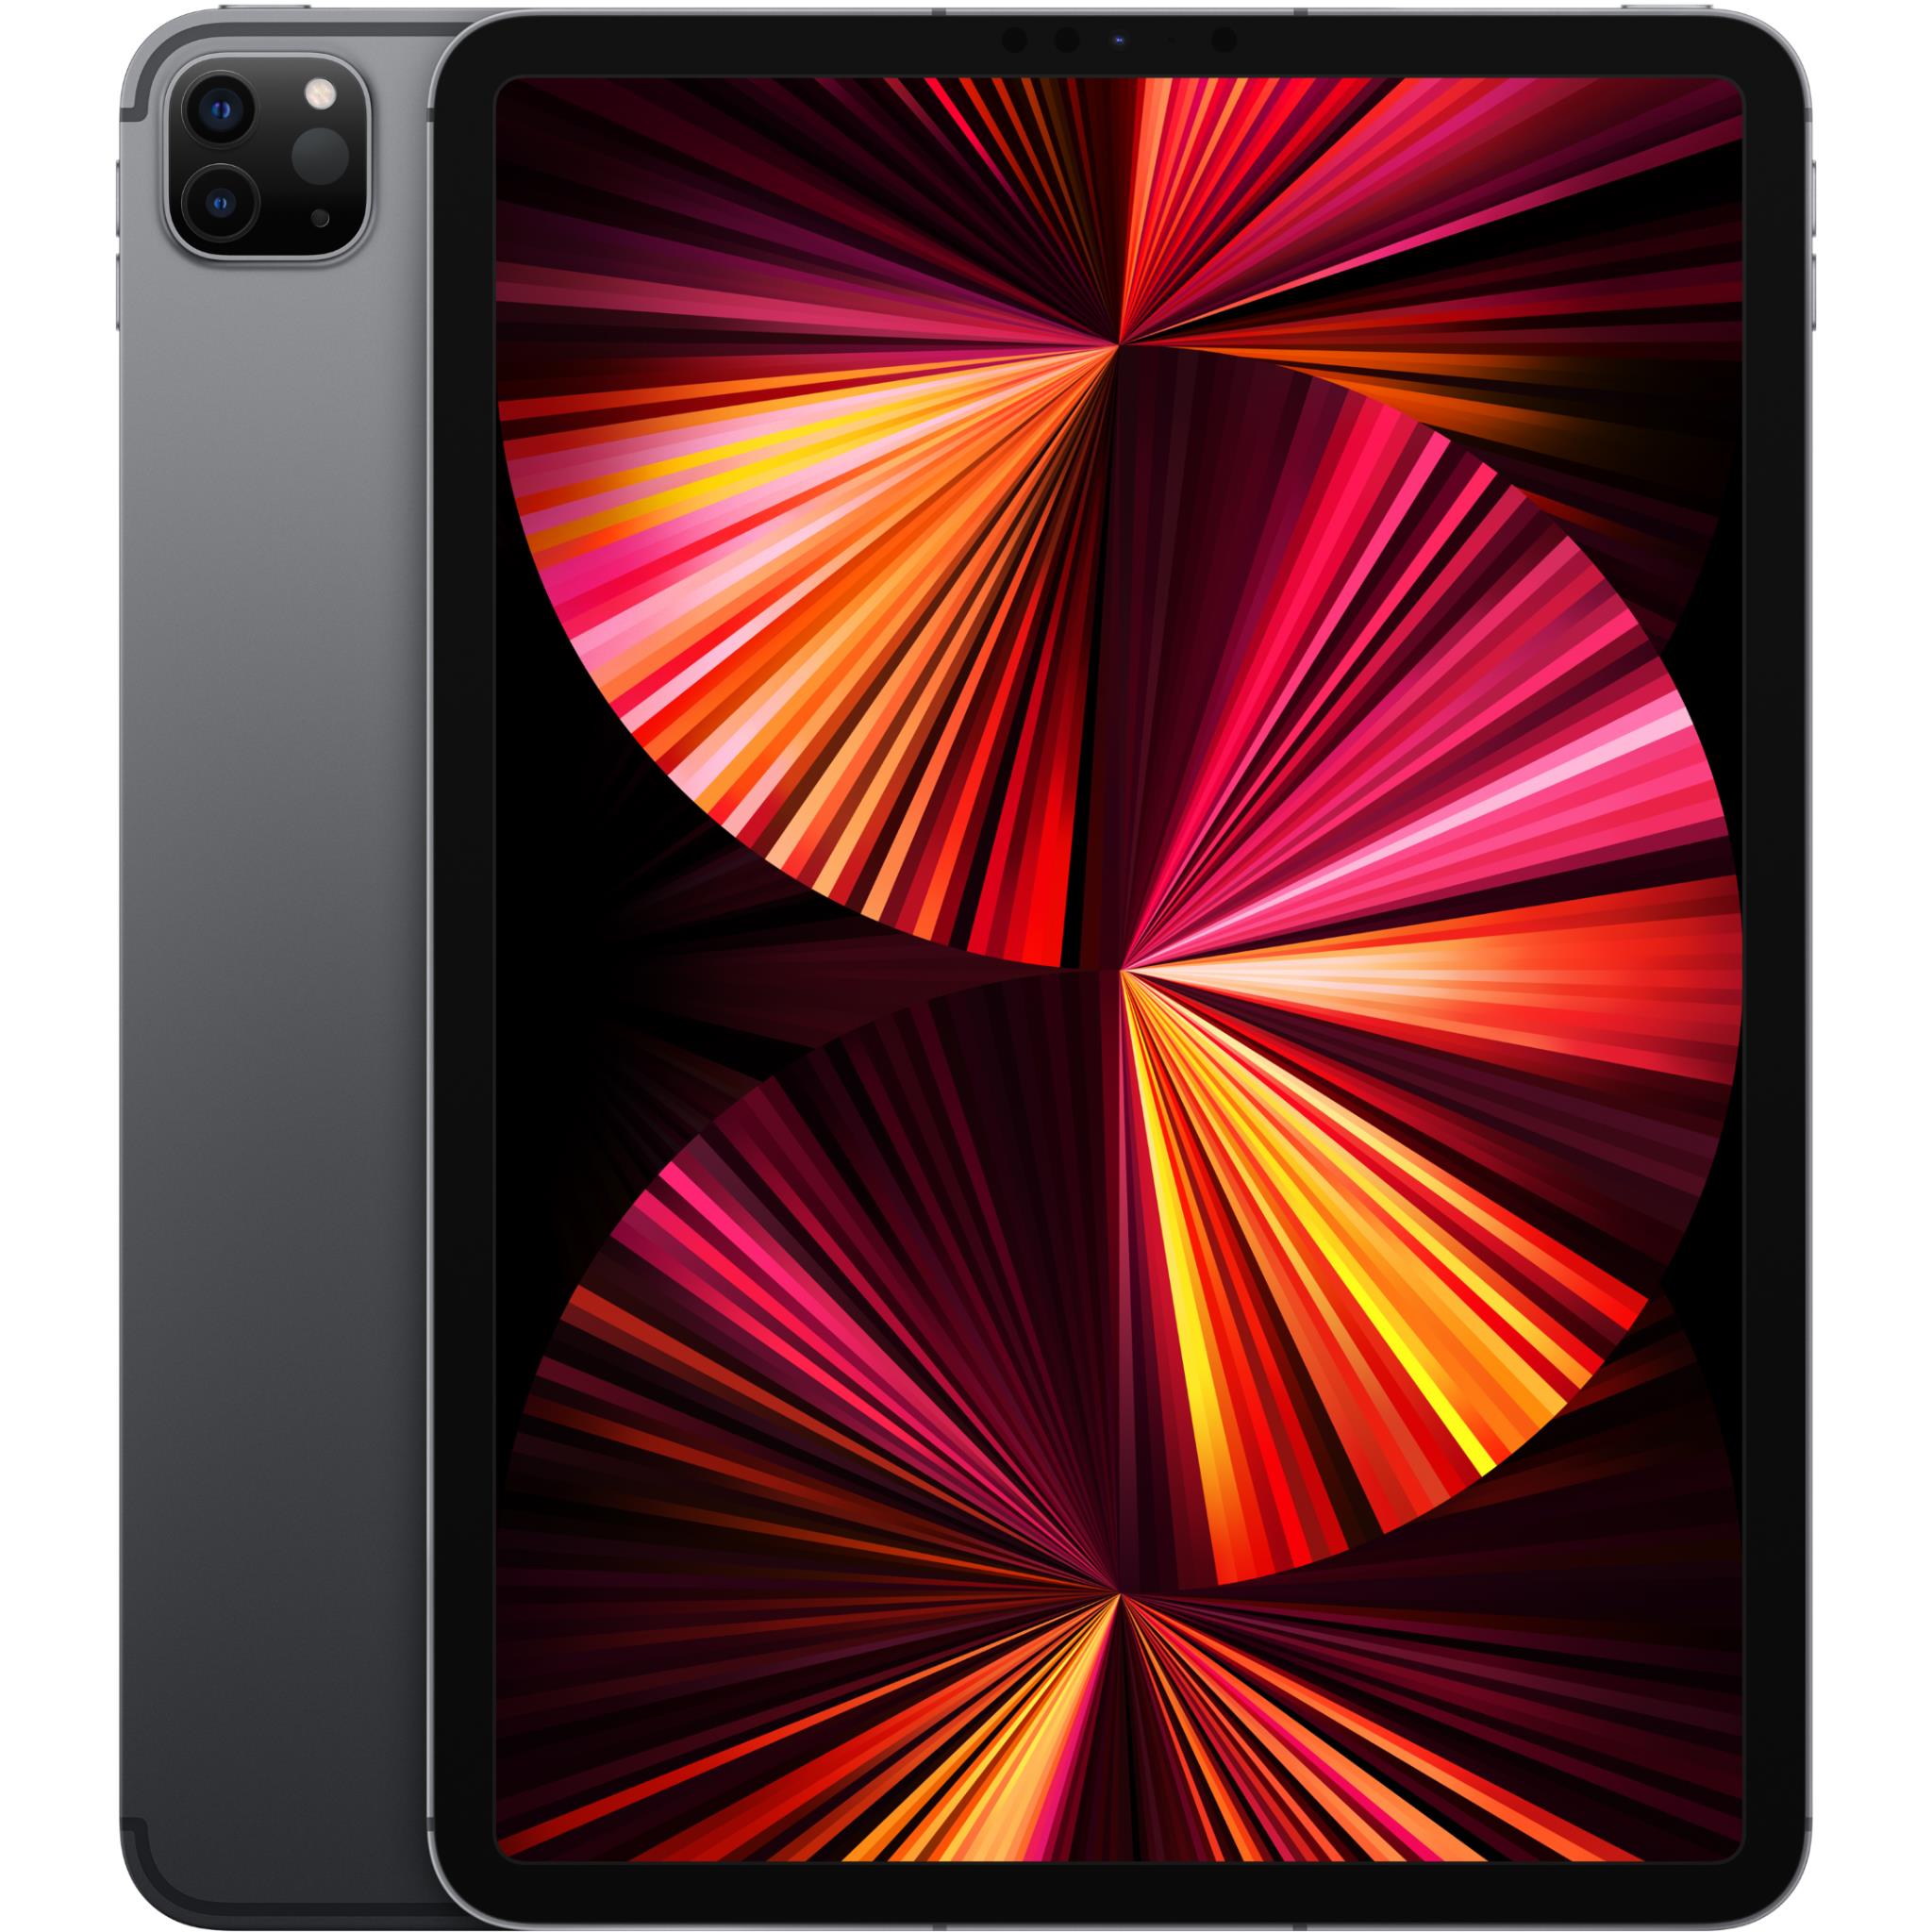 2020 Apple iPad (10.2-inch, Wi-Fi, 128GB) - Silver (Renewed)